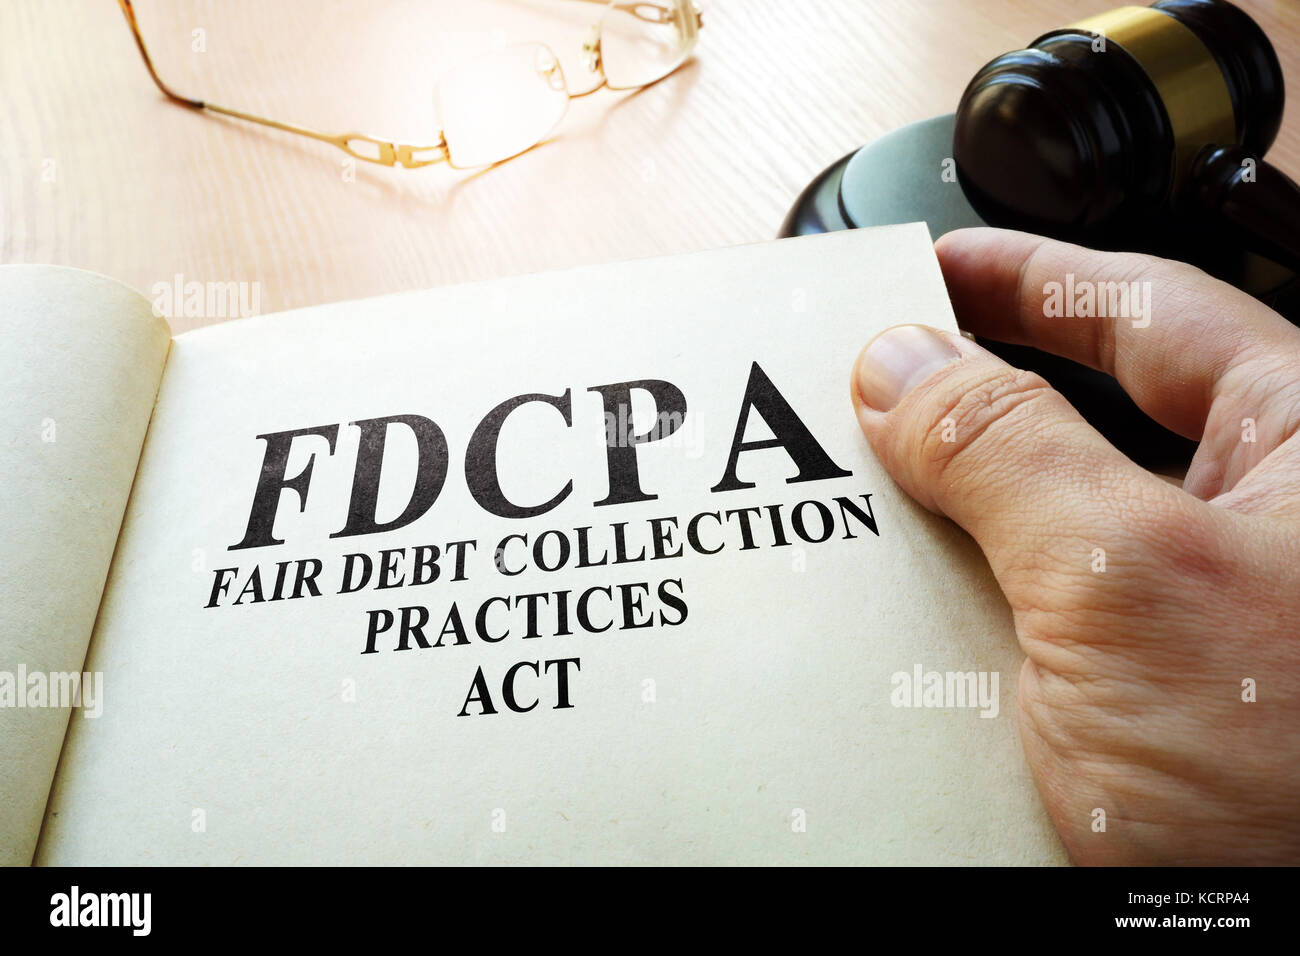 Fair Debt Collection Practices Act FDCPA on a table. Stock Photo